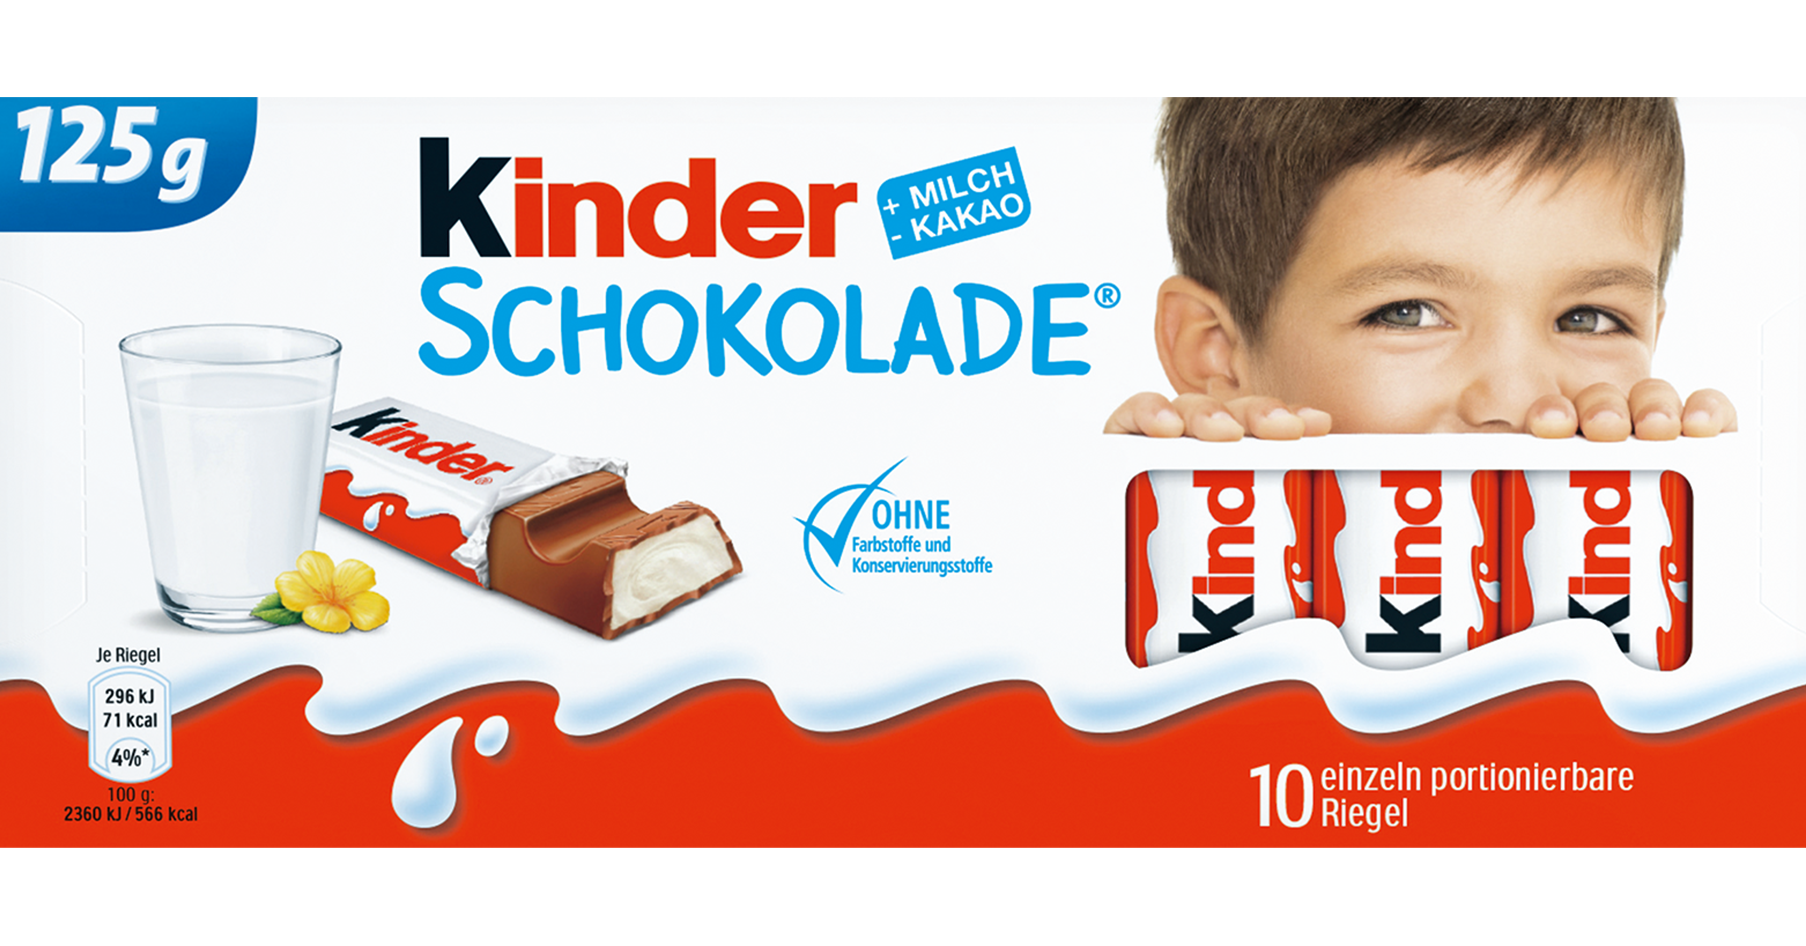 kinder Schokolade - Neue Packung - slider - nachher